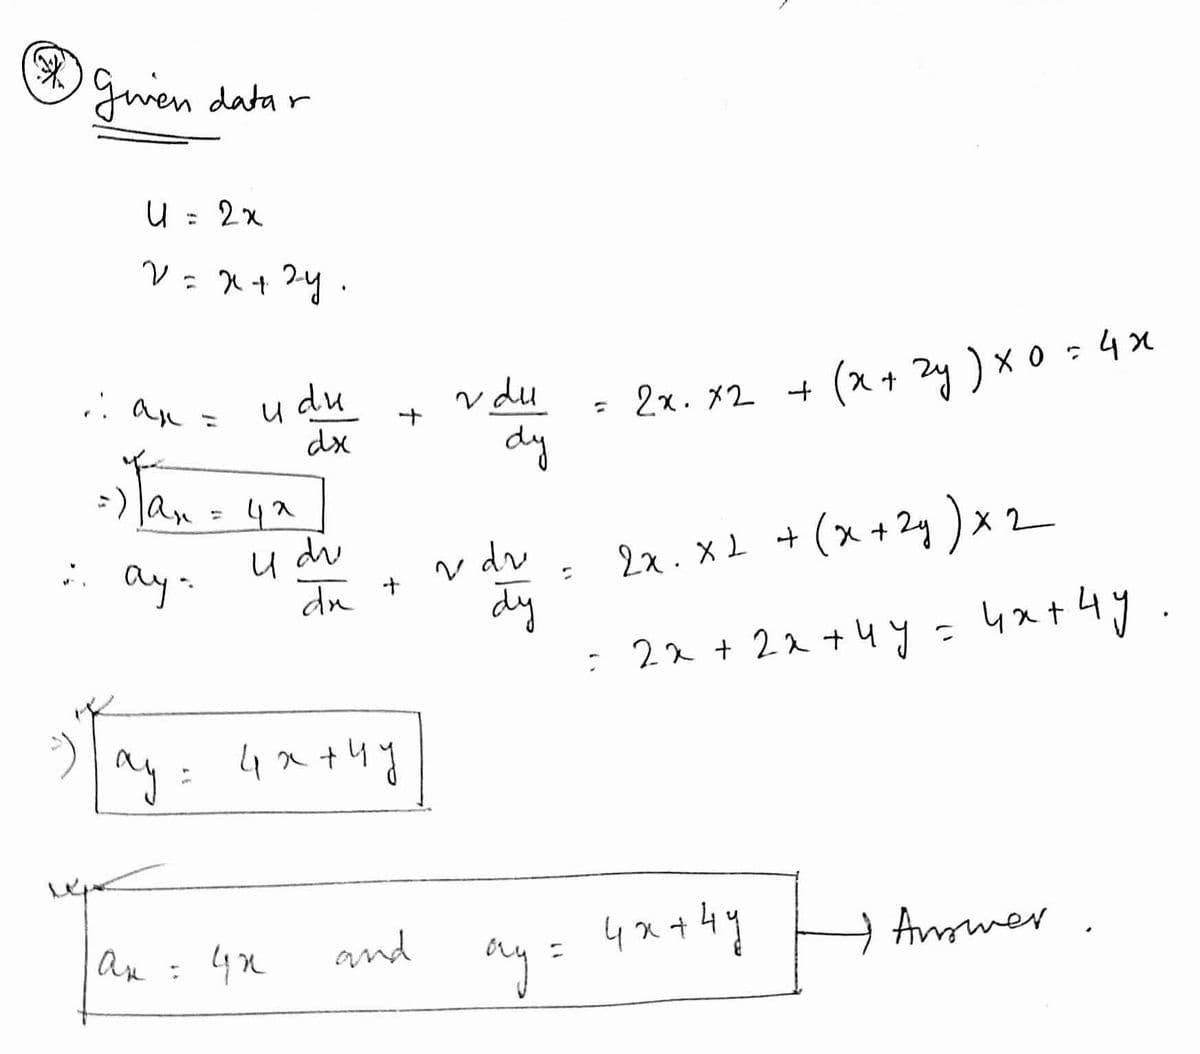 Gwen datar
%3D
du
dx
2x. x2 + (x+ zy)x 0 - 4x
dy
v du
Tan - ya]
-) lan
42
u du
dn +
2x. x2 + (x+24 ) x2
: ay-
v dr
dy
22 + 22 +4y=
4at4y
ay: 4a+4y
an: 4n
and
ay
→ Ammer
३। ३
